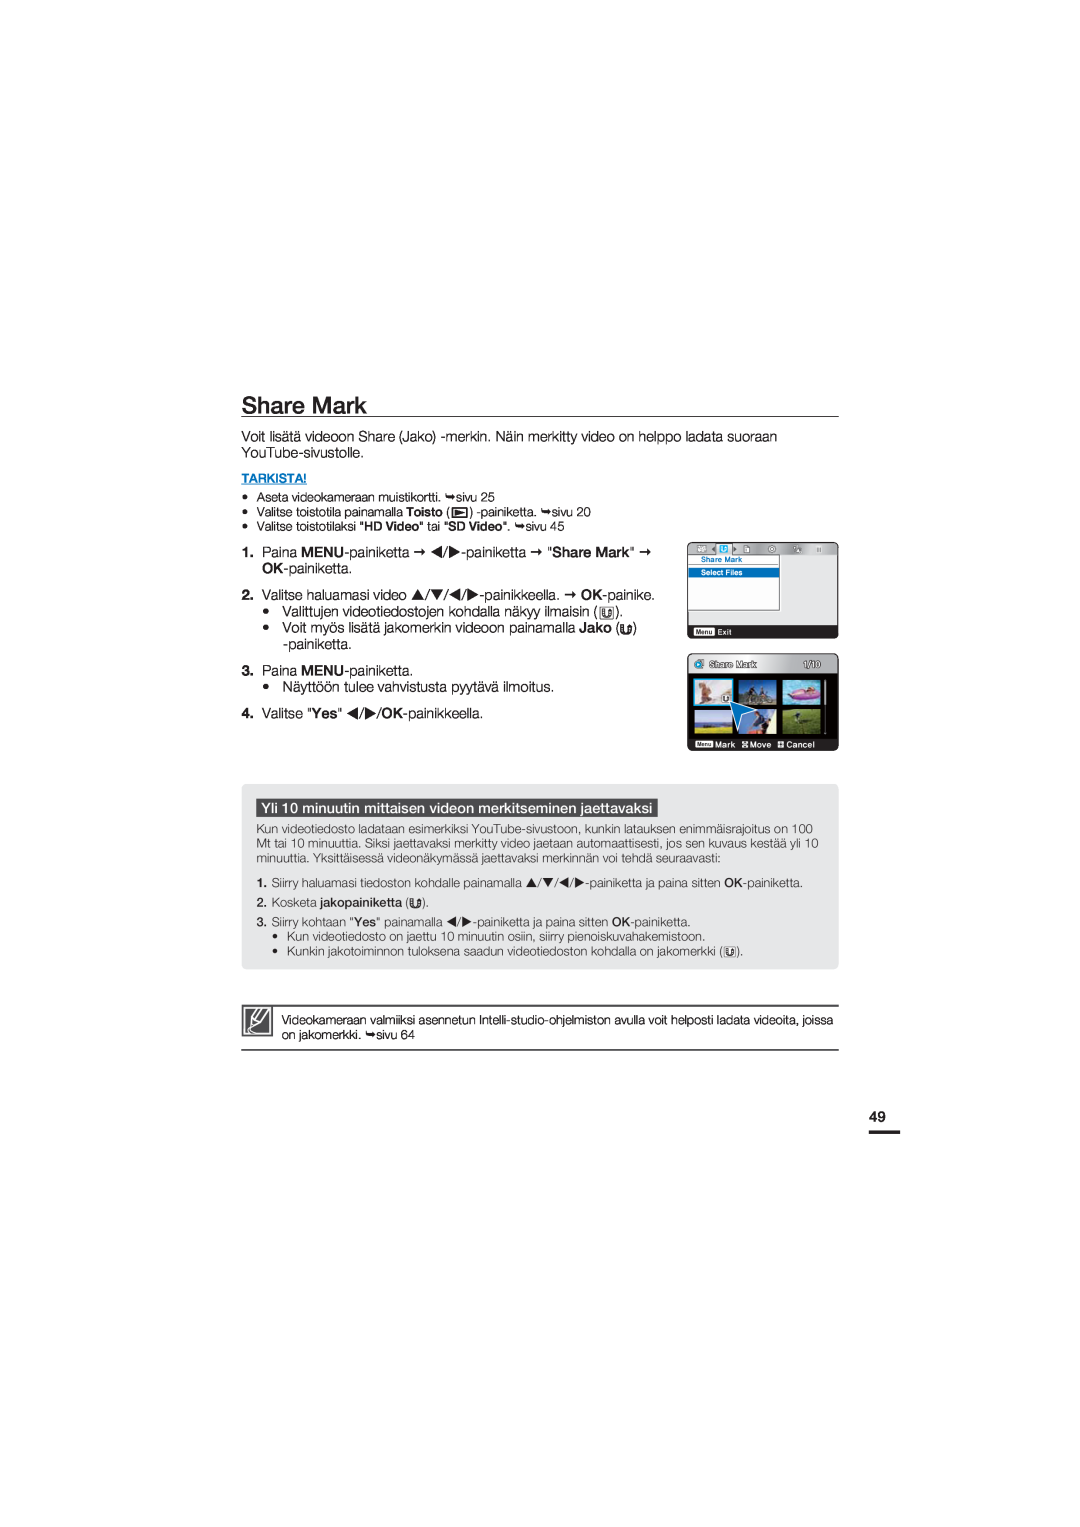 Samsung HMX-U20BP/EDC manual Share Mark, Yli 10 minuutin mittaisen videon merkitseminen jaettavaksi, Tarkista 